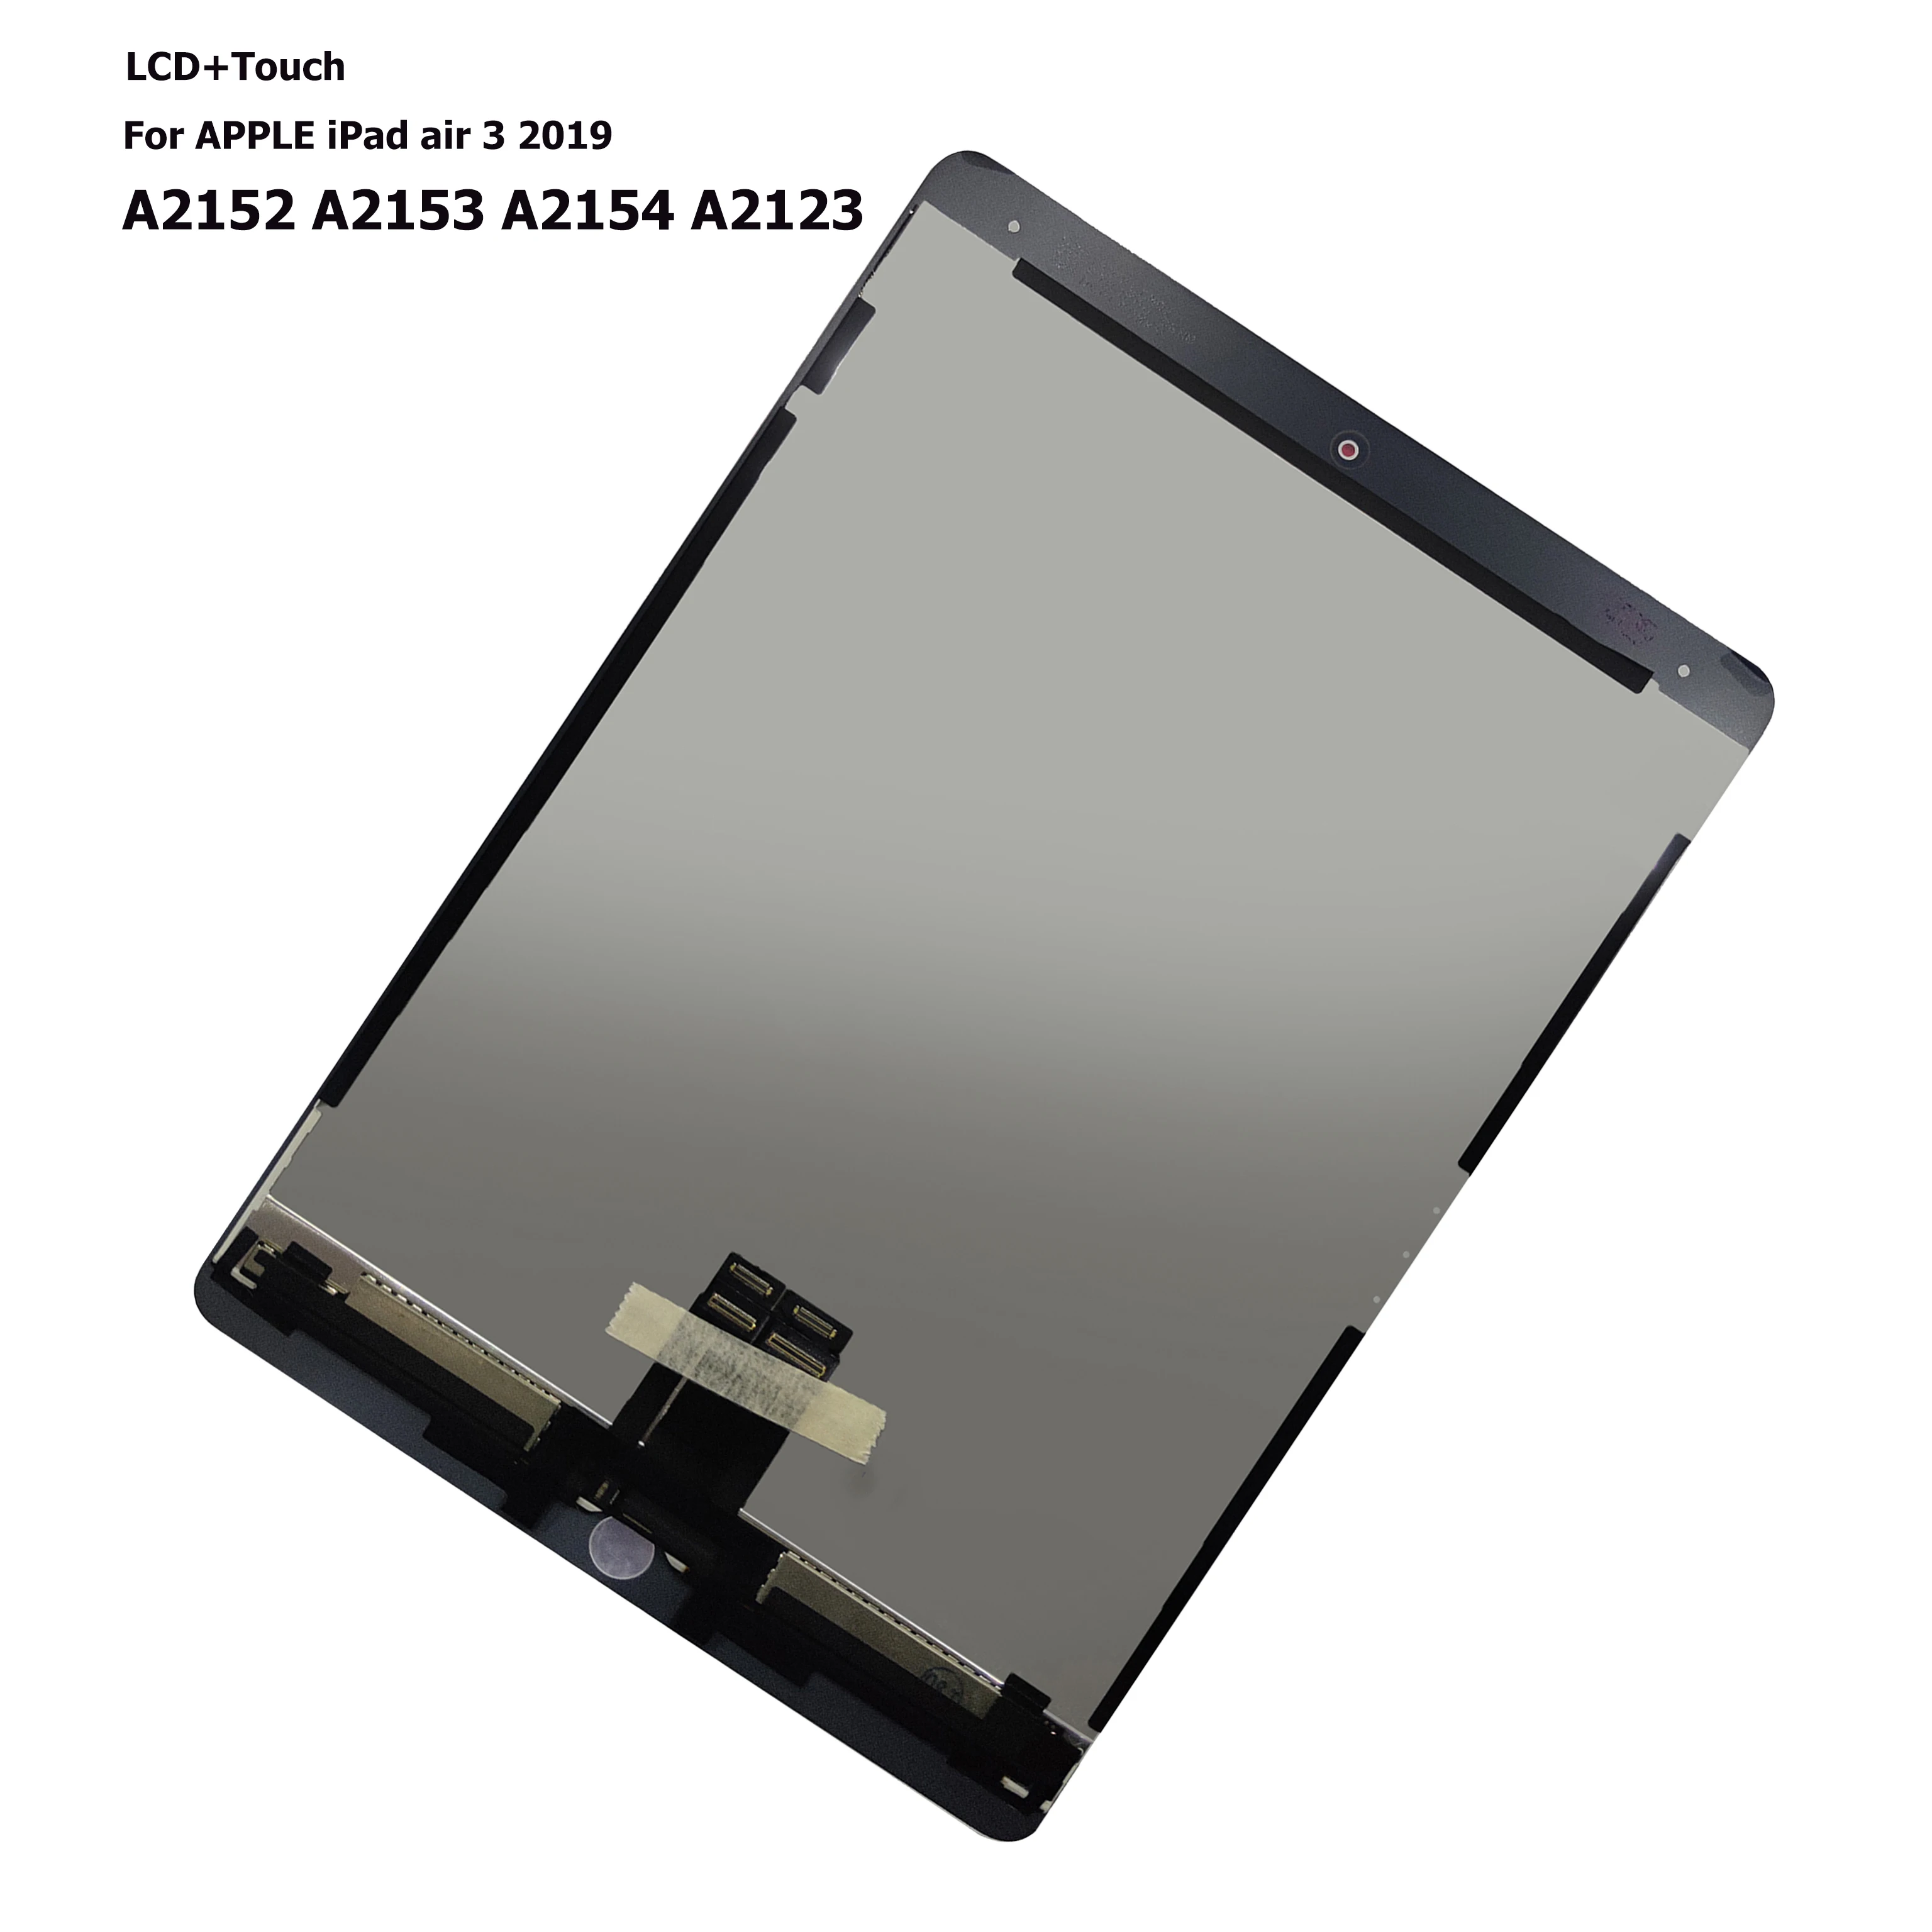 Pantalla LCD para iPad Air 3 2019, montaje de digitalizador con pantalla táctil para iPad Pro 10,5, 2ª generación, A2123, A2153, A2154